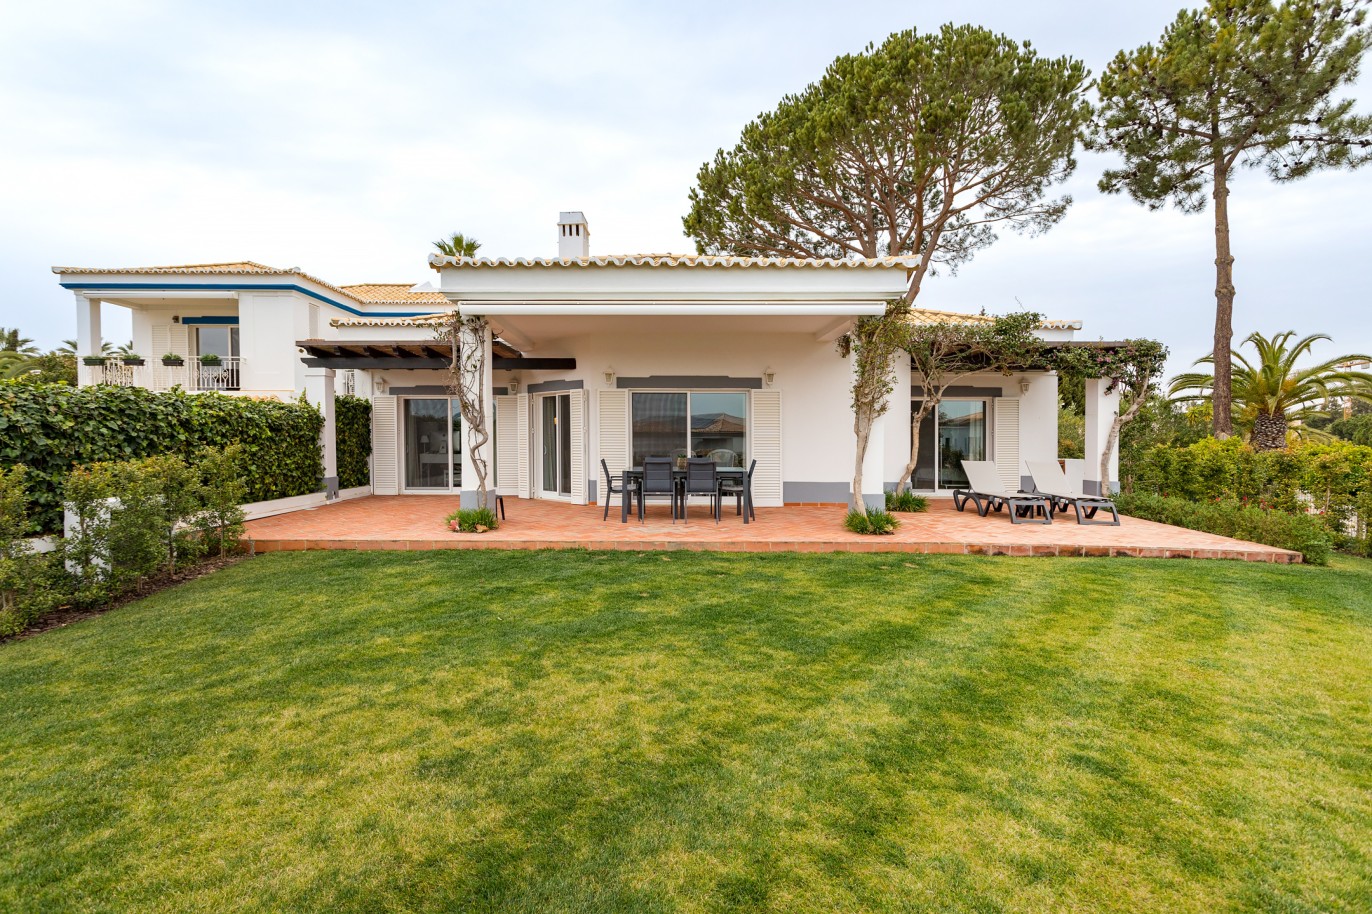 Villa de 3 dormitorios con jardín, en venta en Quinta do Lago, Algarve_218598